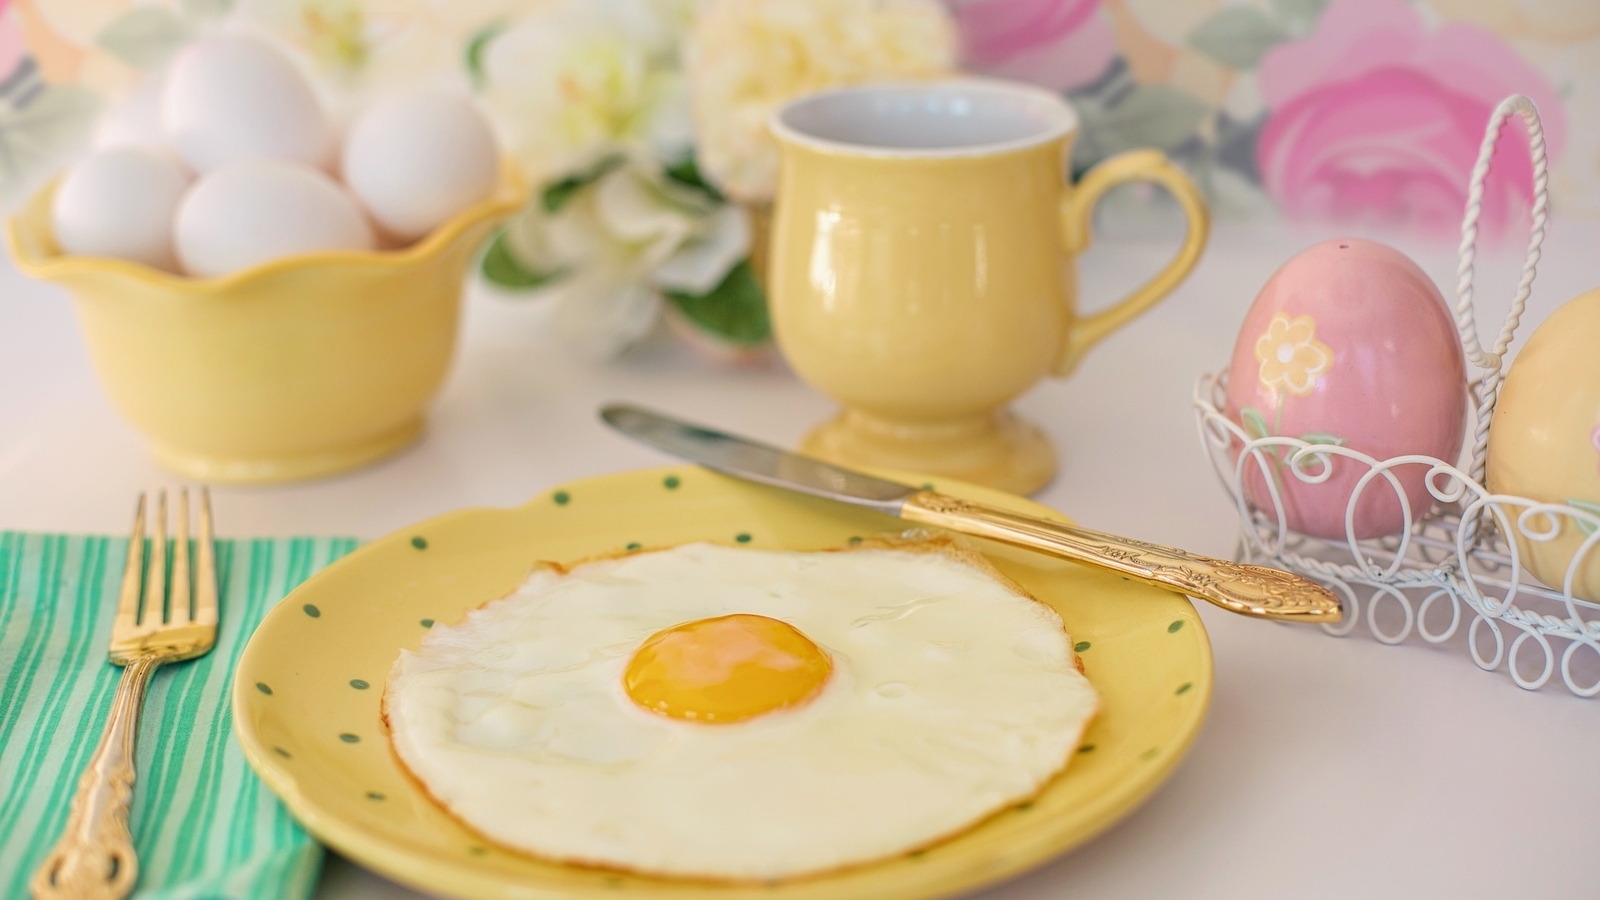 Image: Breakfast, morning, fried egg, plate